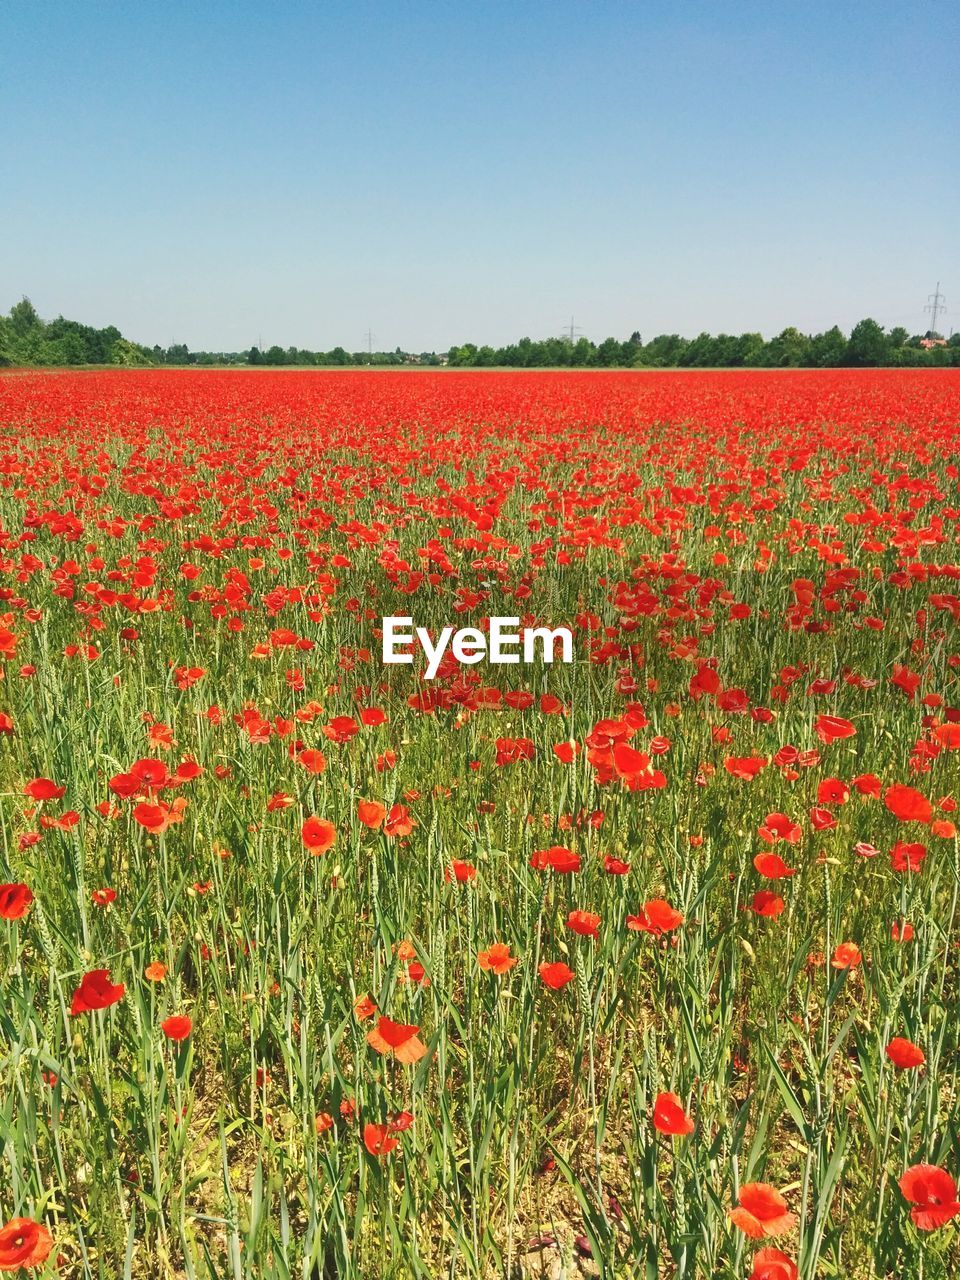 Idyllic view of poppy fields against clear sky